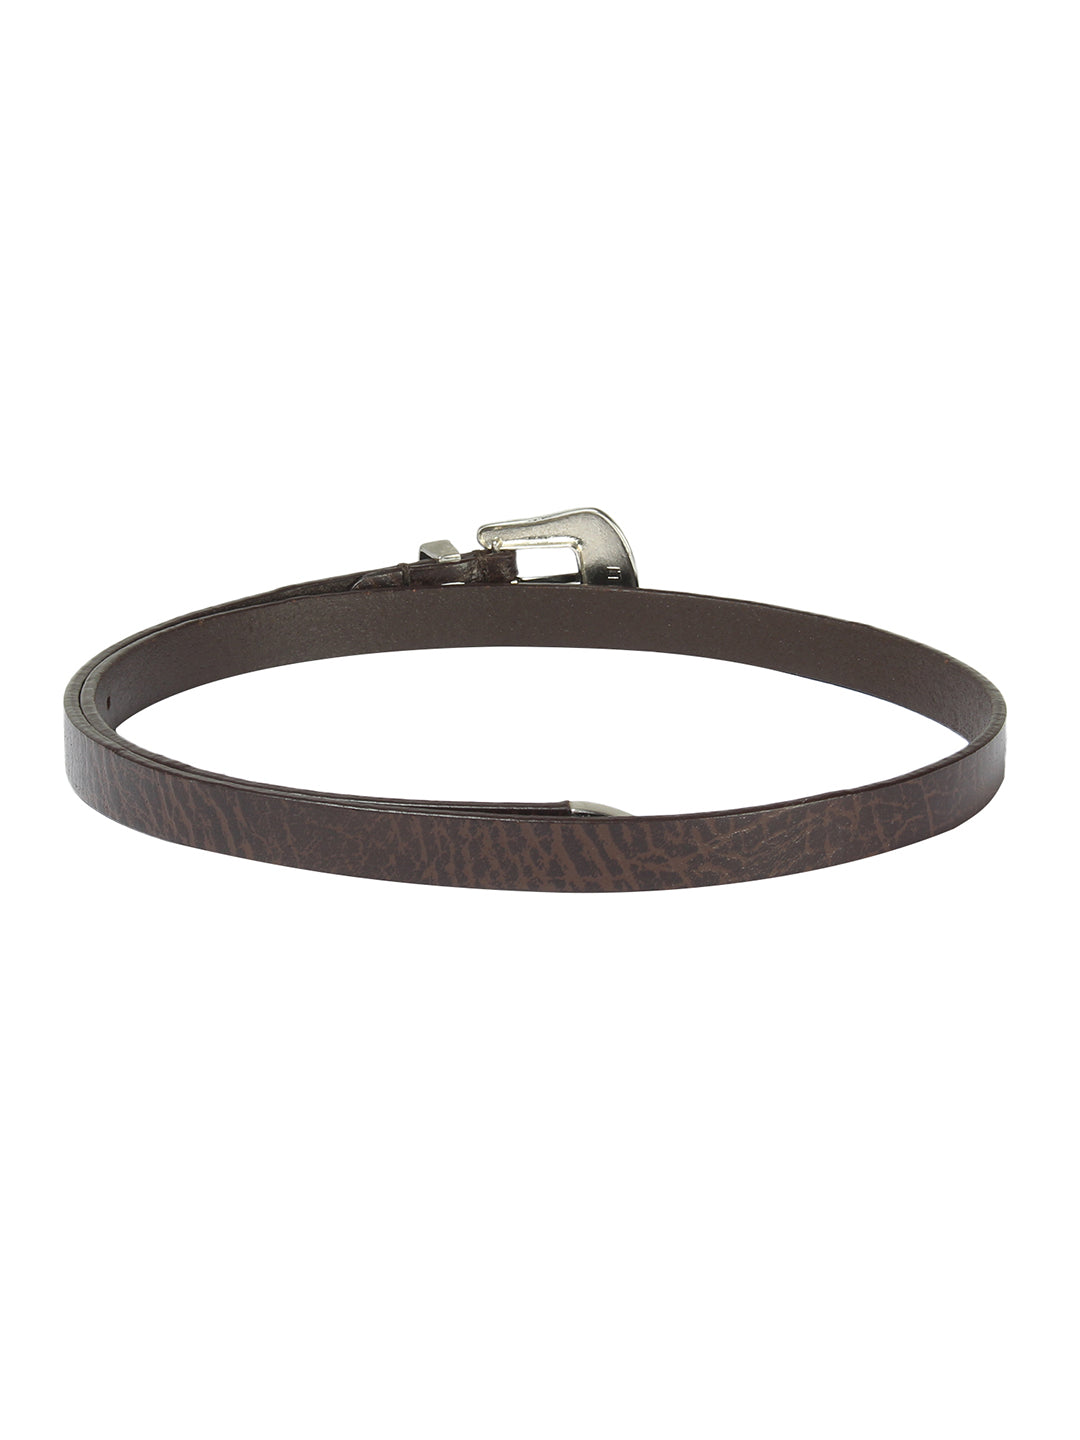 Two-tone brown cowboy belt